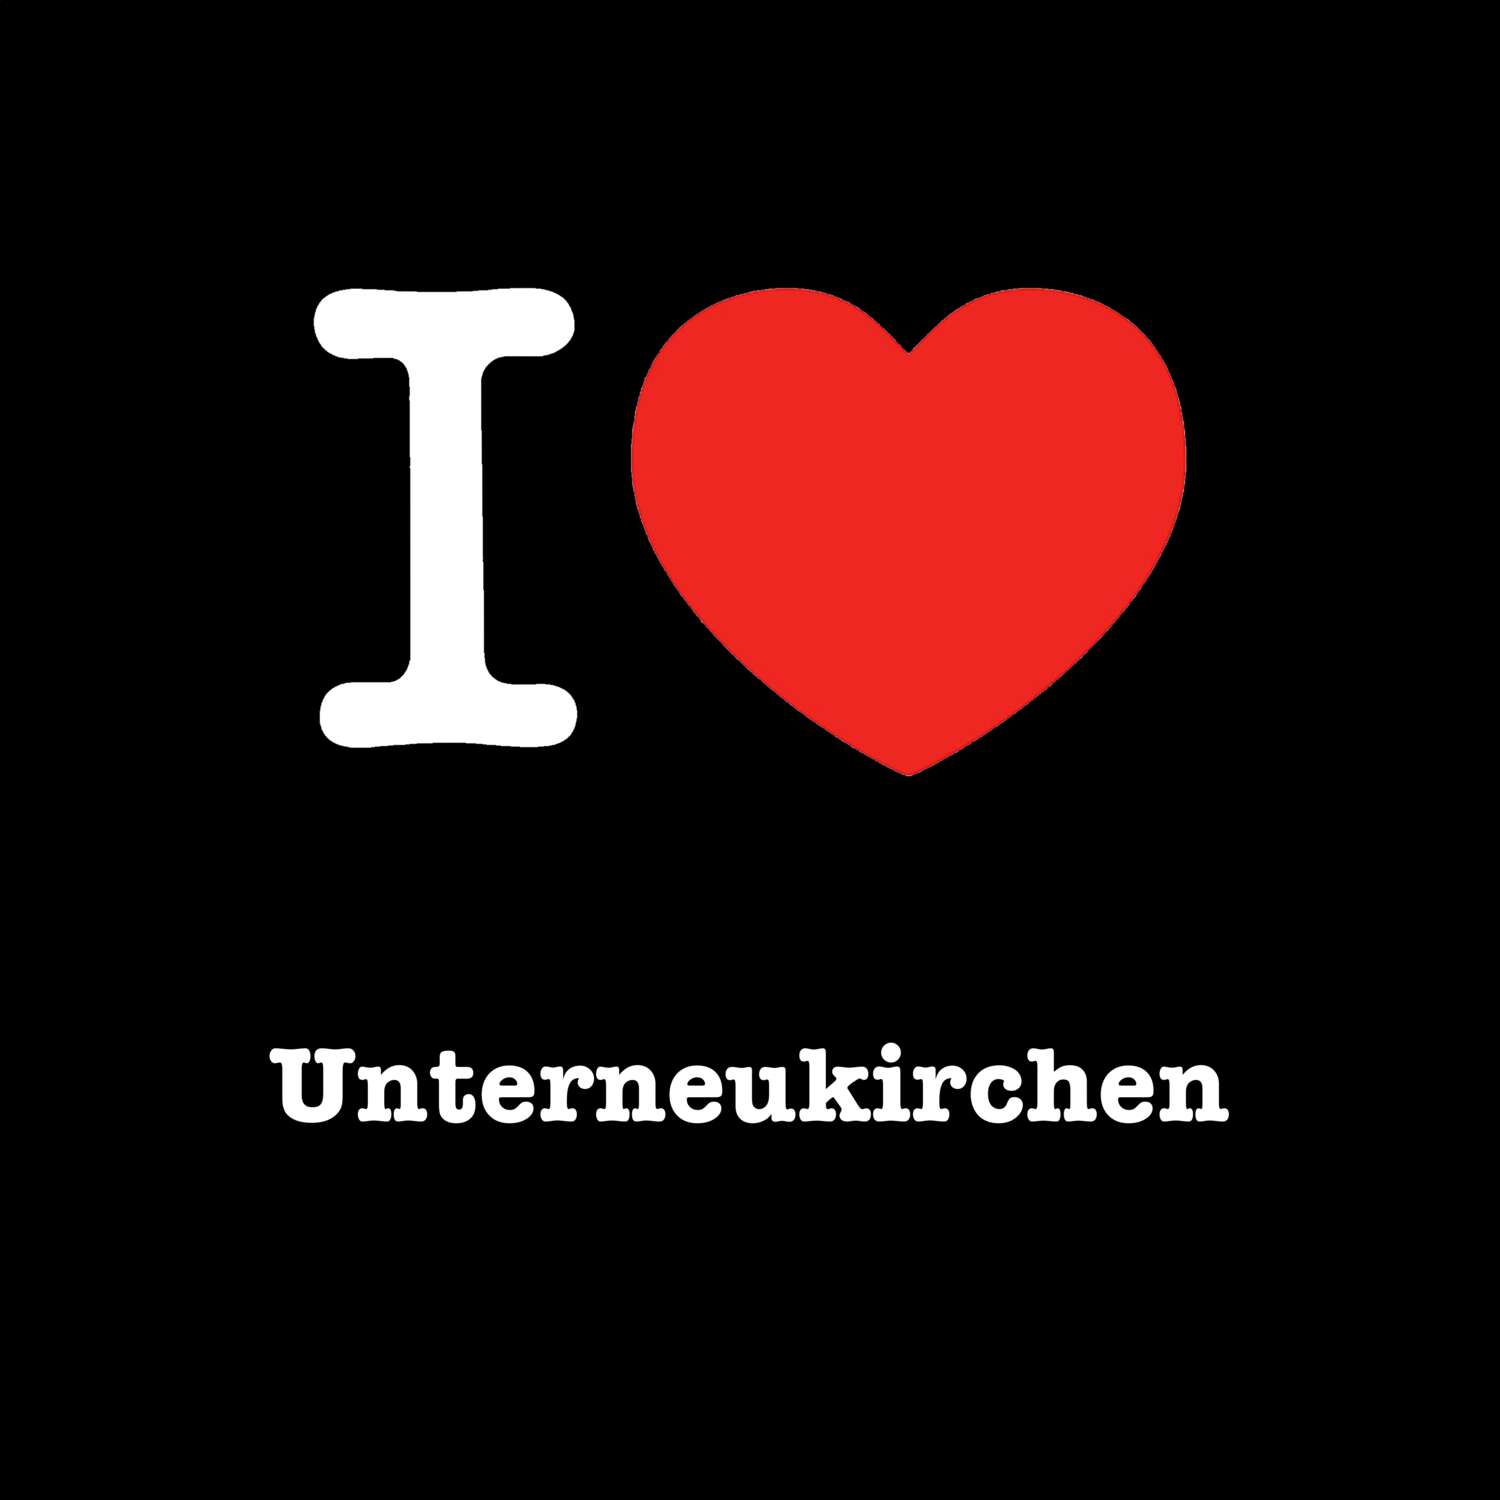 Unterneukirchen T-Shirt »I love«